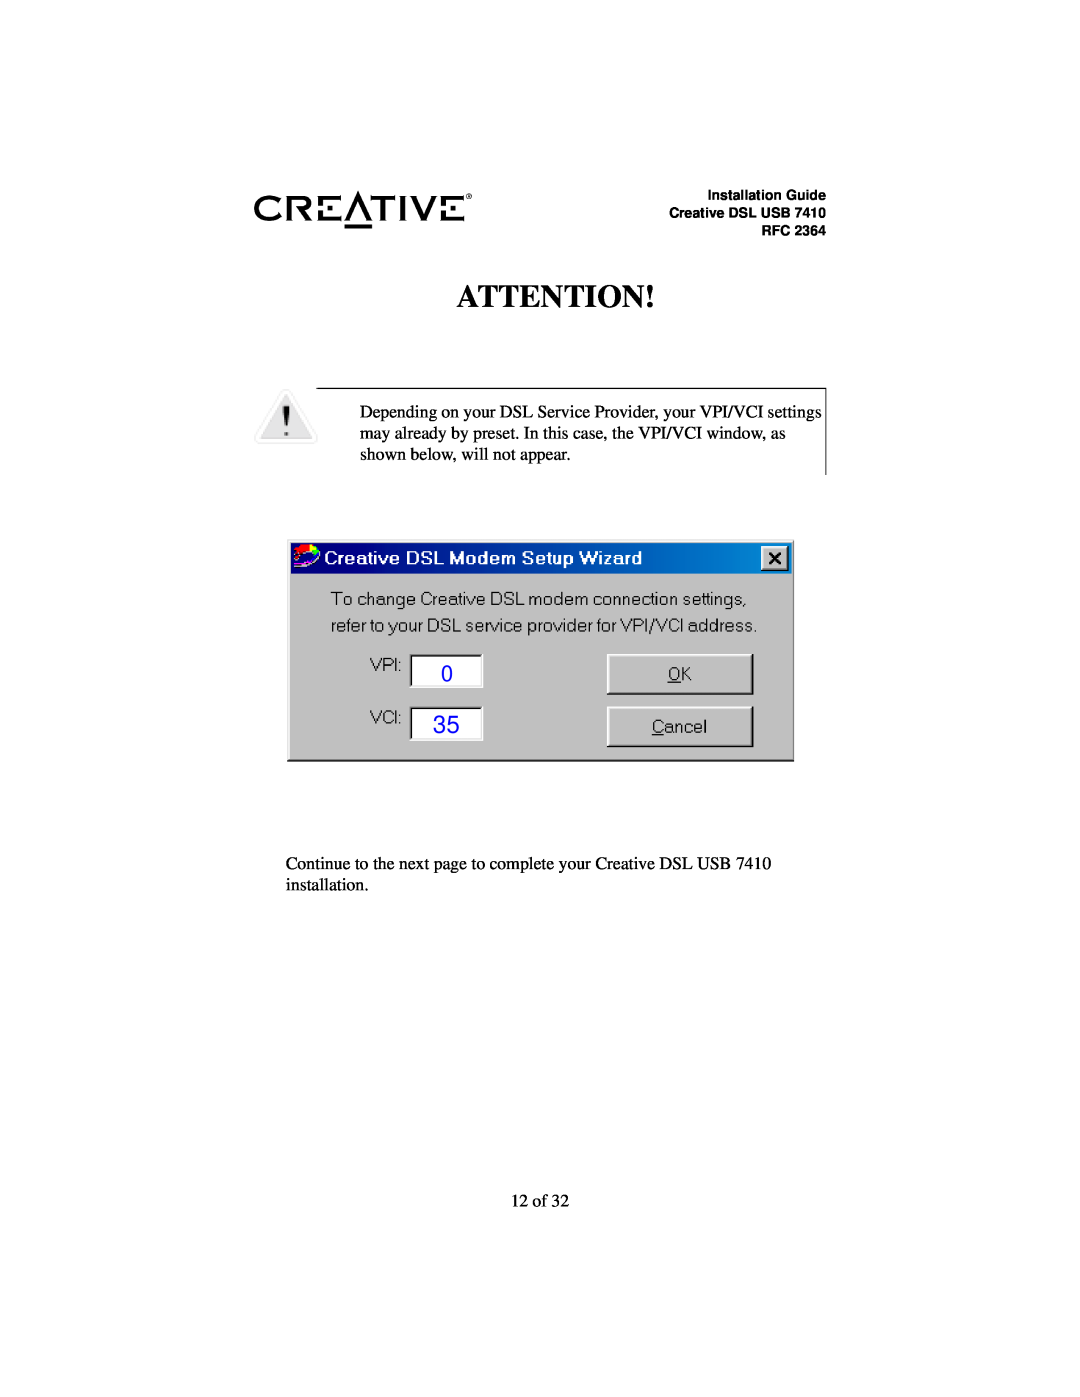 Creative RFC 2364 appendix 12 of 